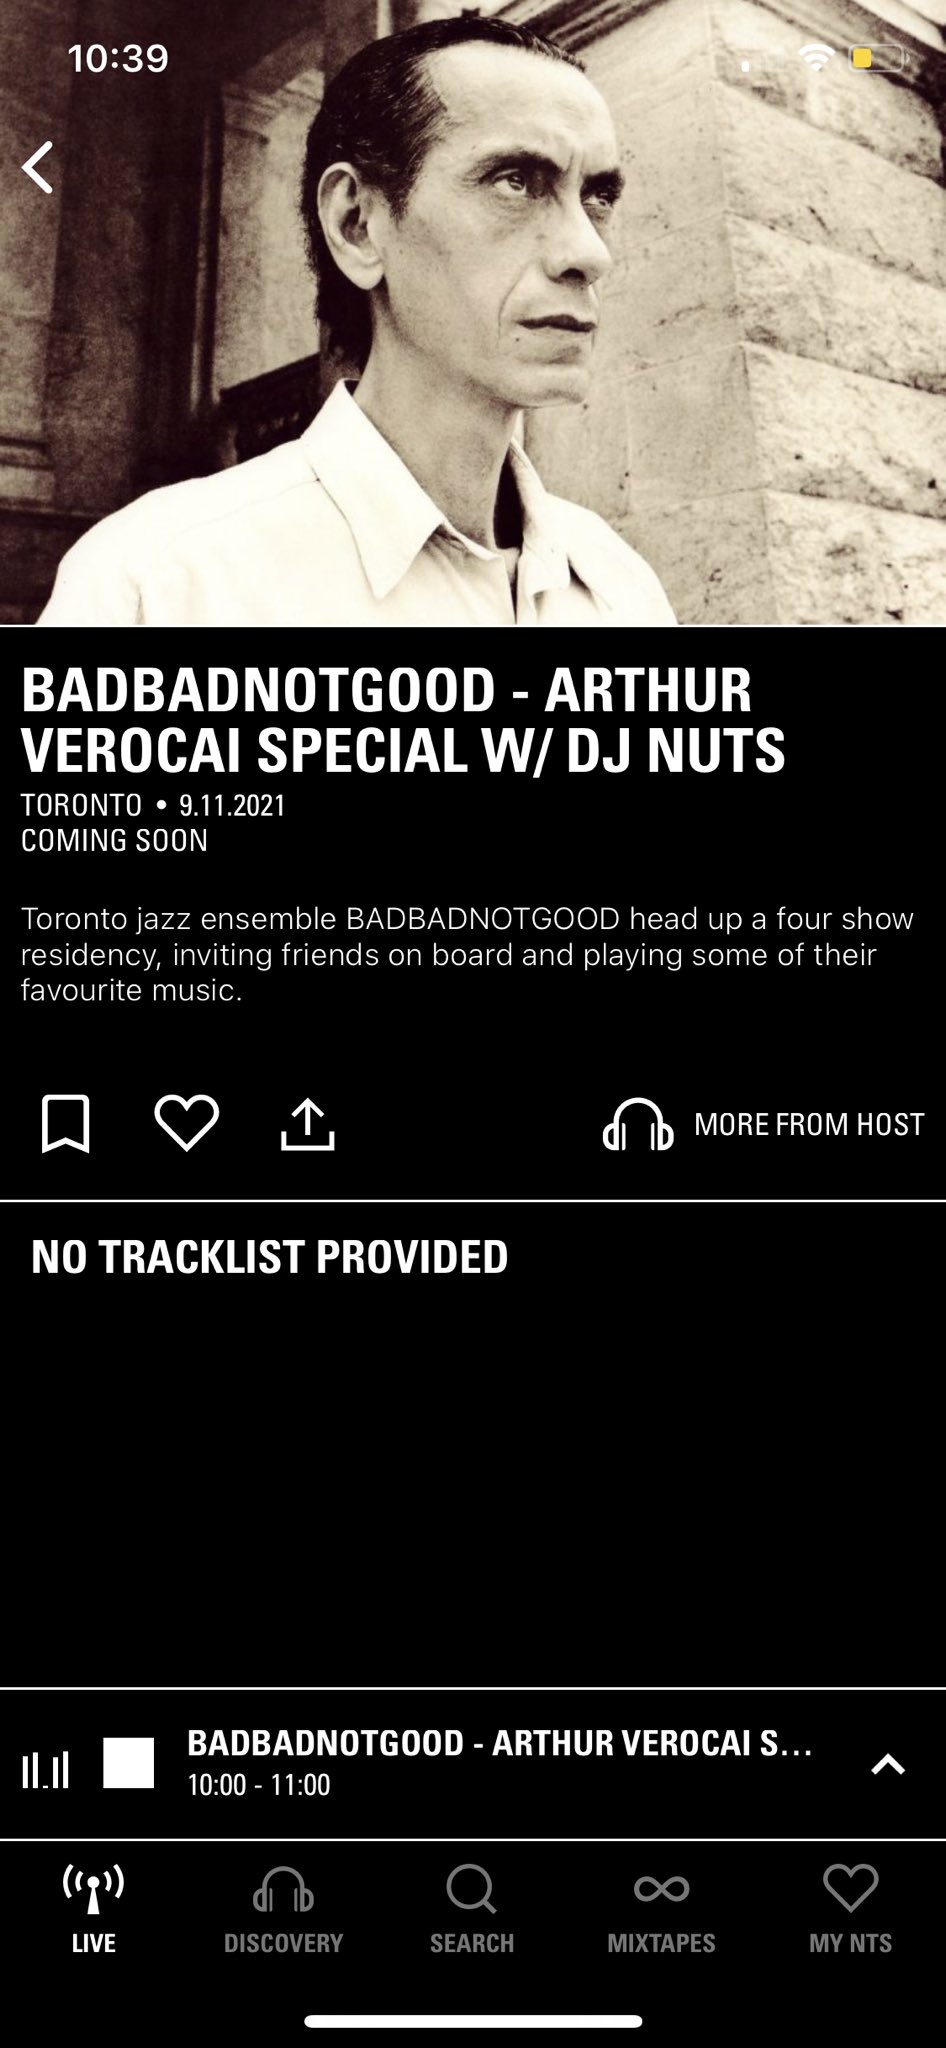 Badbadnotgood - Arthur Verocai Special w/ DJ Nuts 9th November 2021